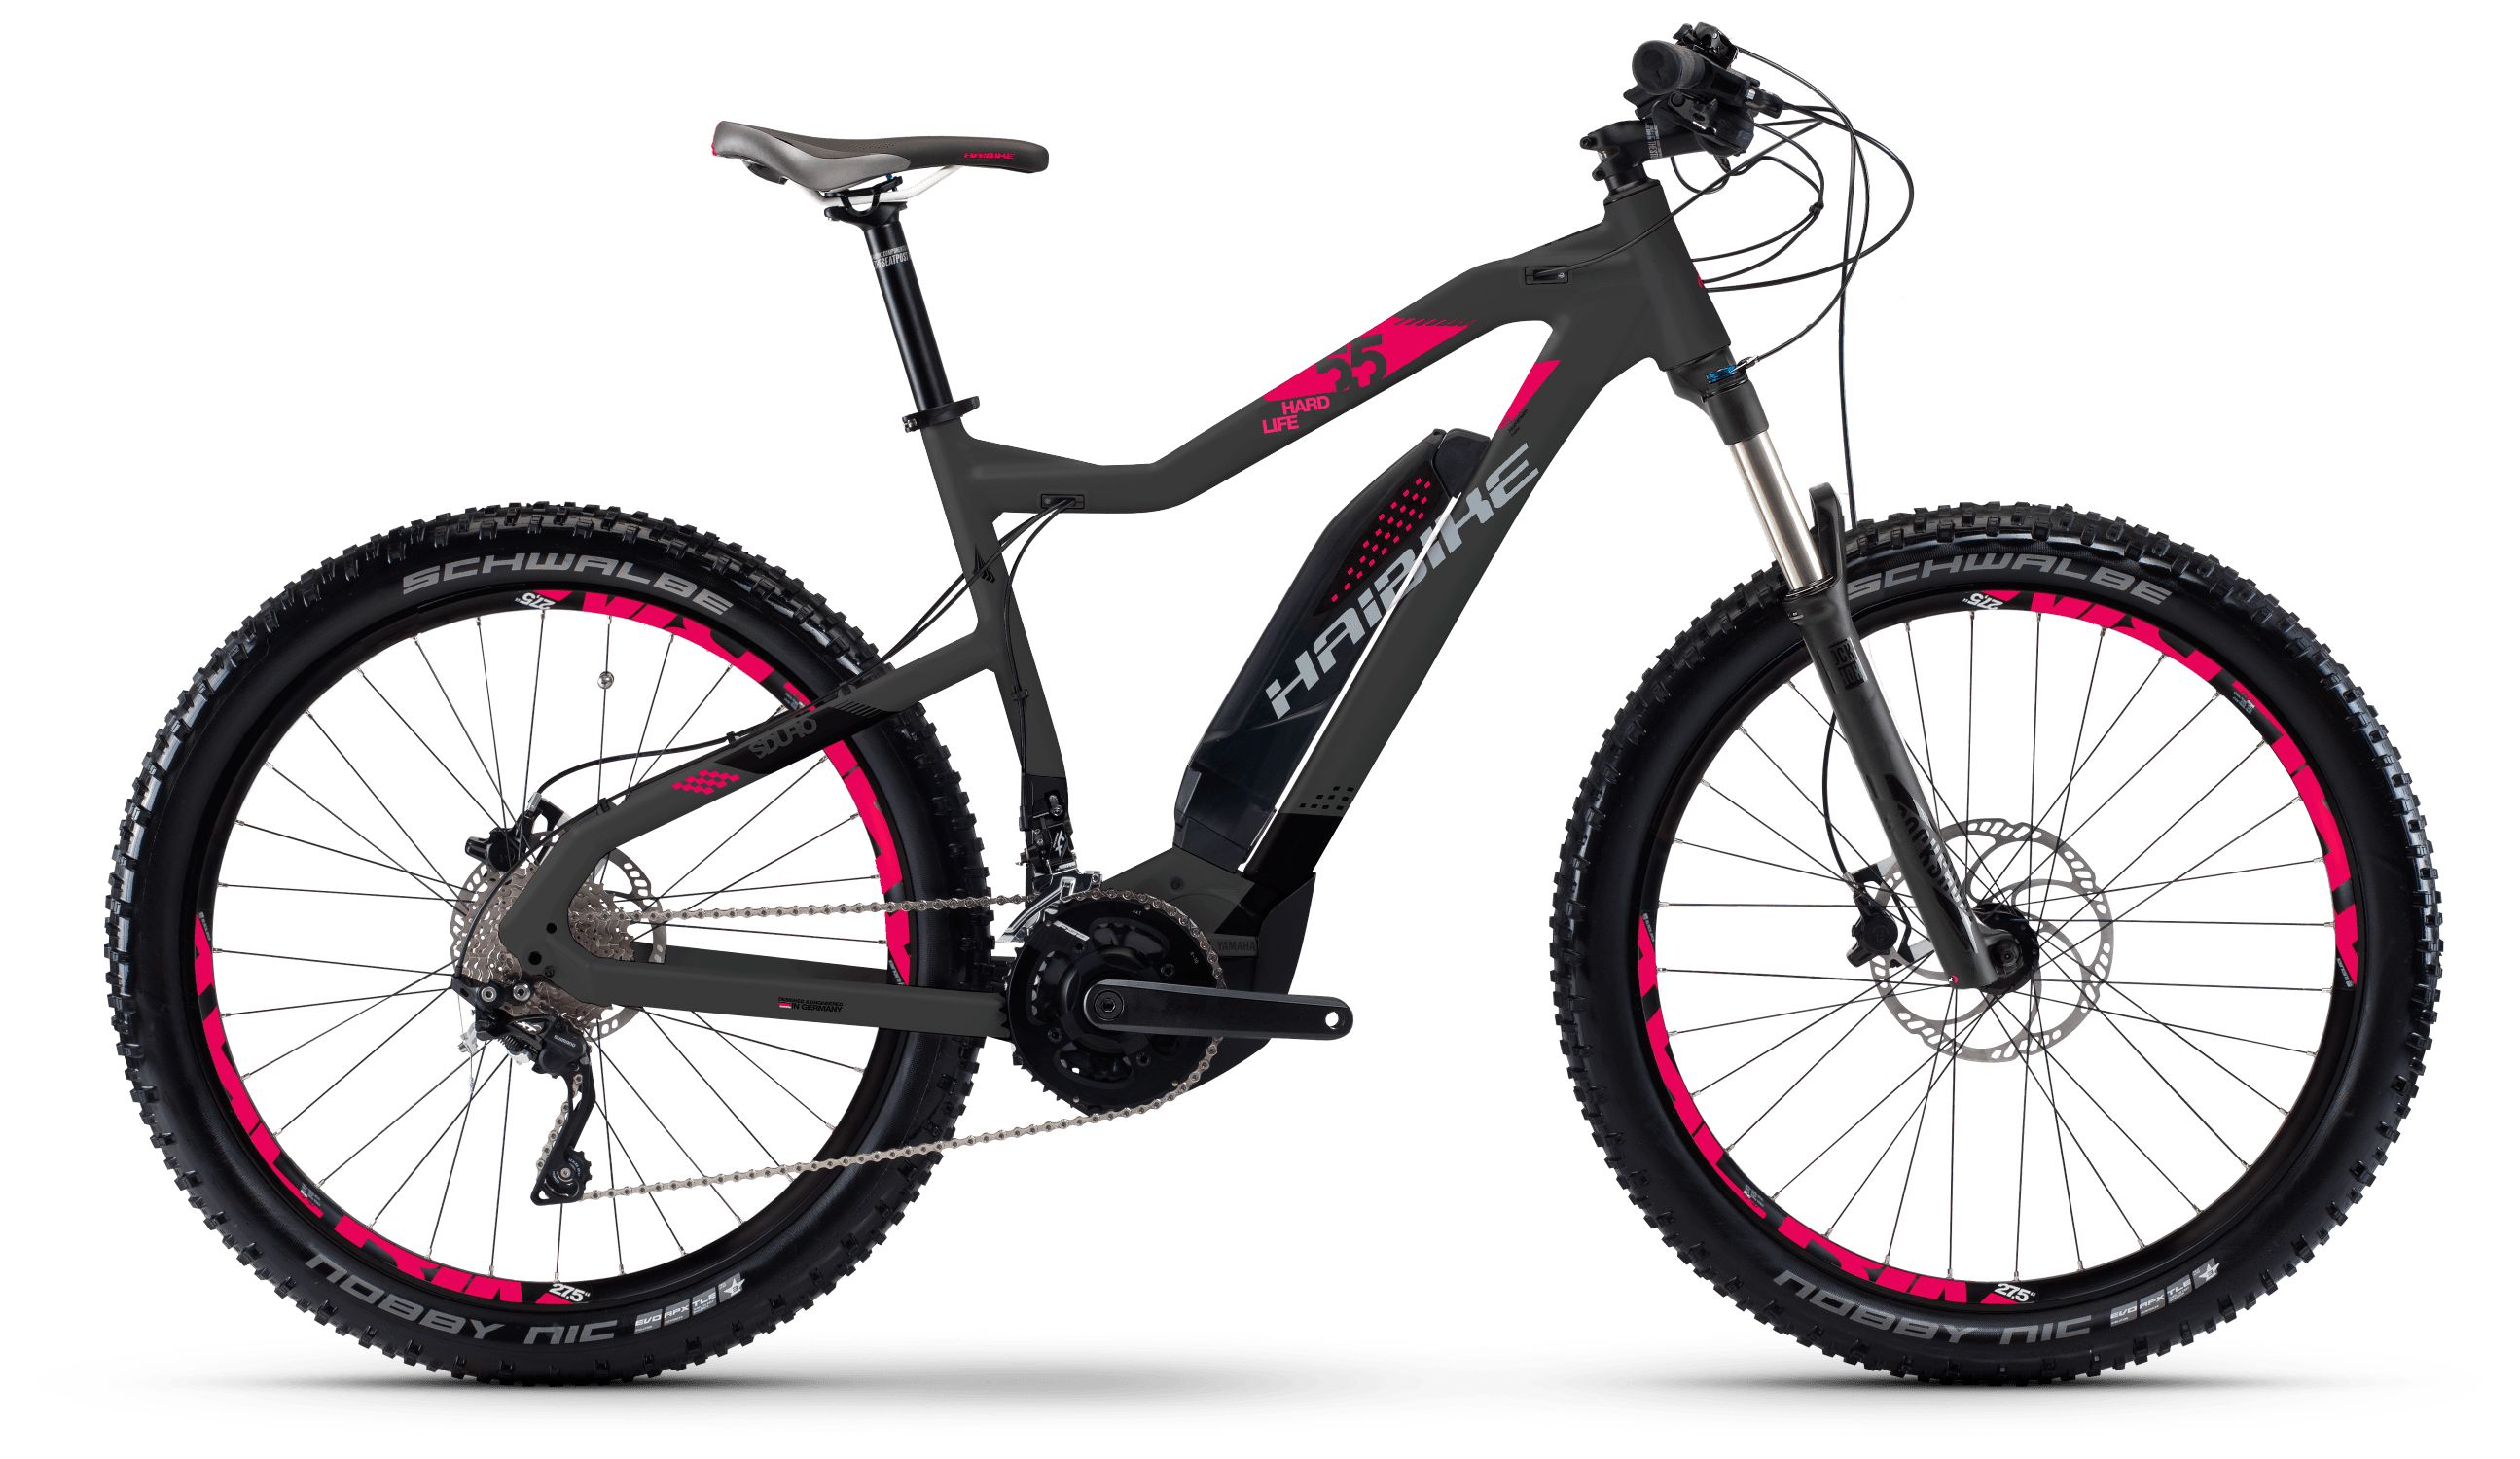  Отзывы о Горном велосипеде Haibike Sduro HardLife 5.5 500Wh 20s XT 2018